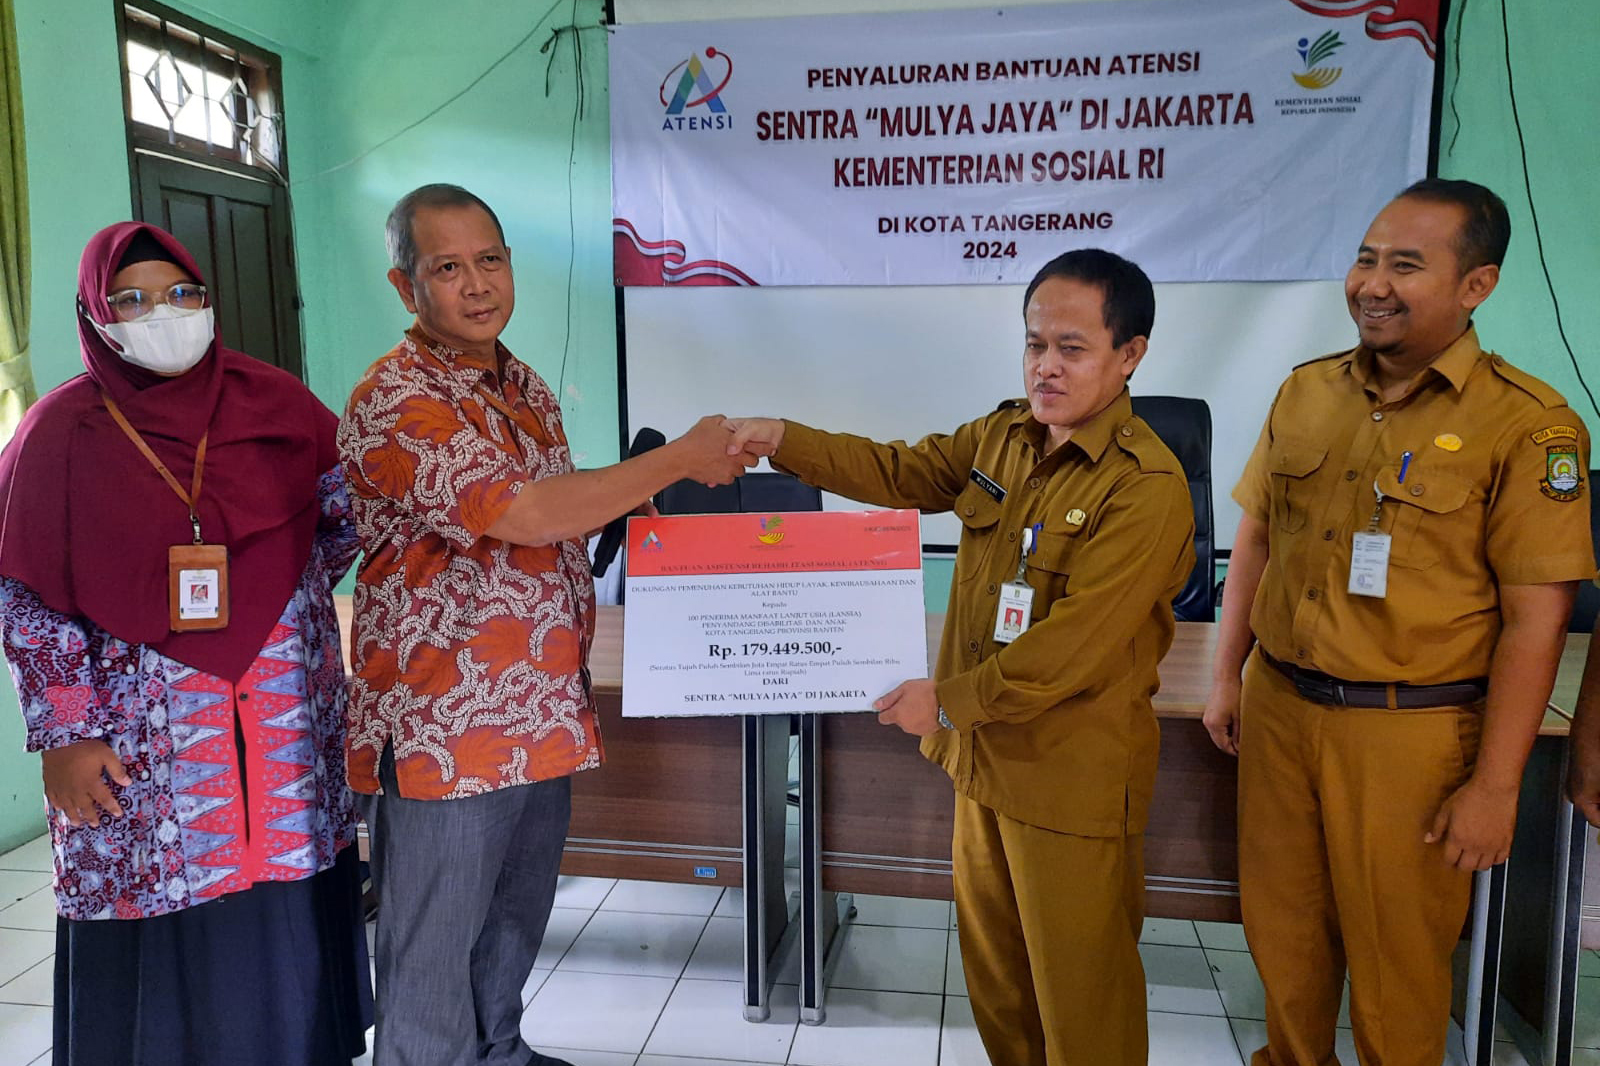 Sentra Mulya Jaya Salurkan ATENSI bagi 100 Penerima Manfaat di Kota Tangerang